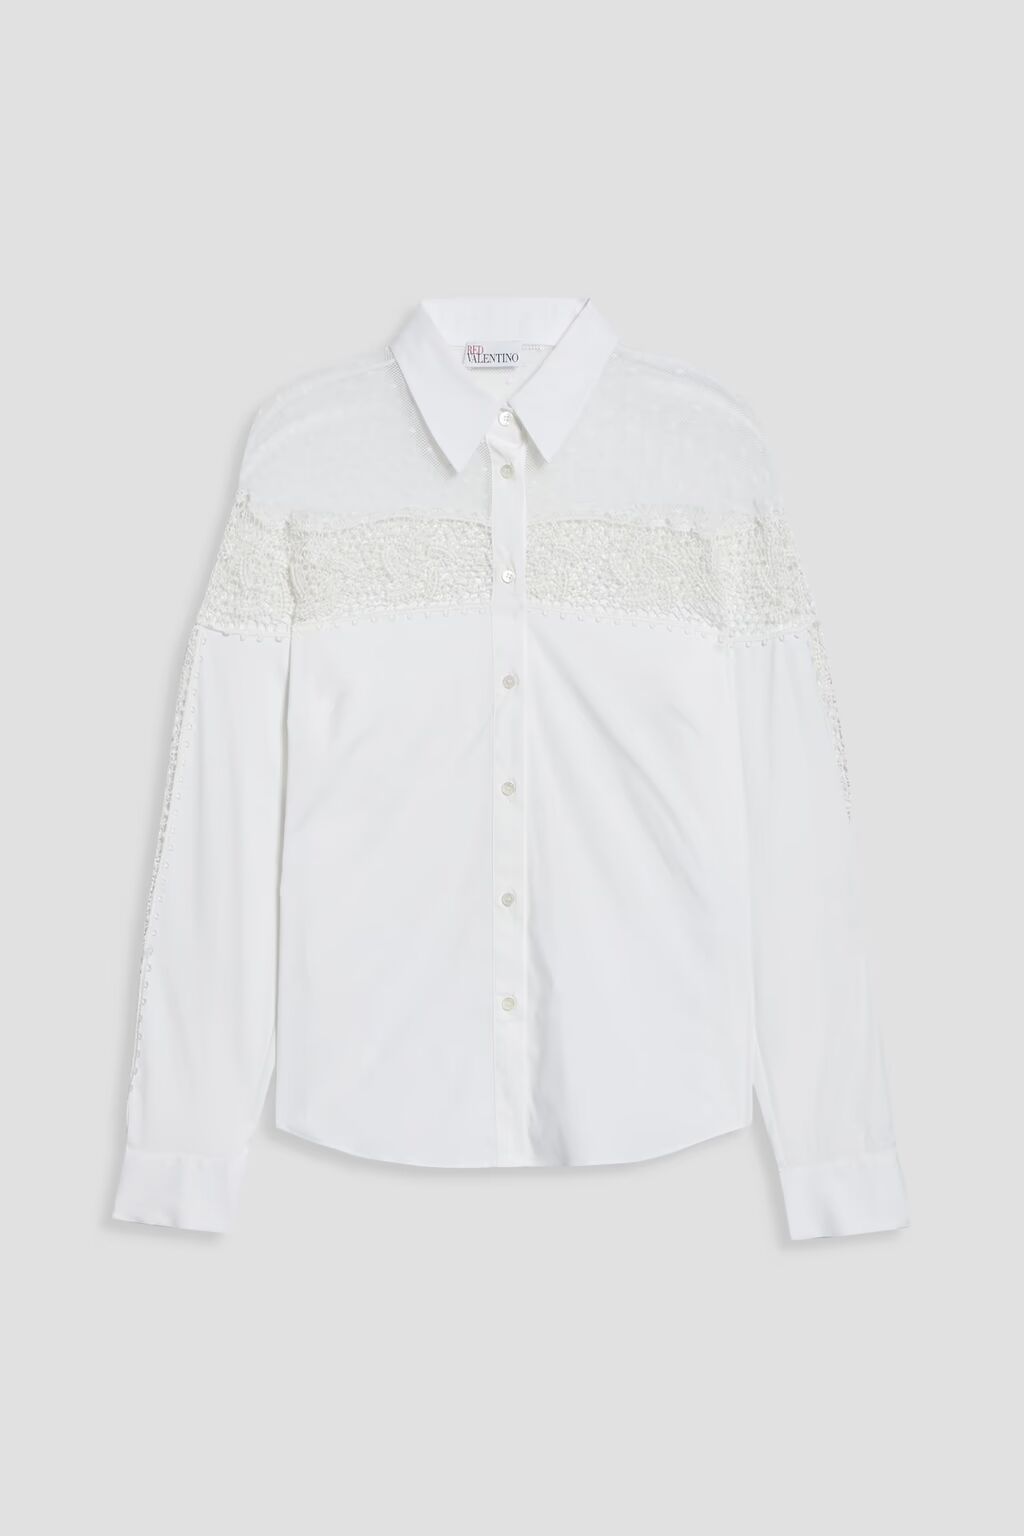 Рубашка из поплина «пуэн-деспри», связанного крючком из кружева и хлопка. Redvalentino, белый